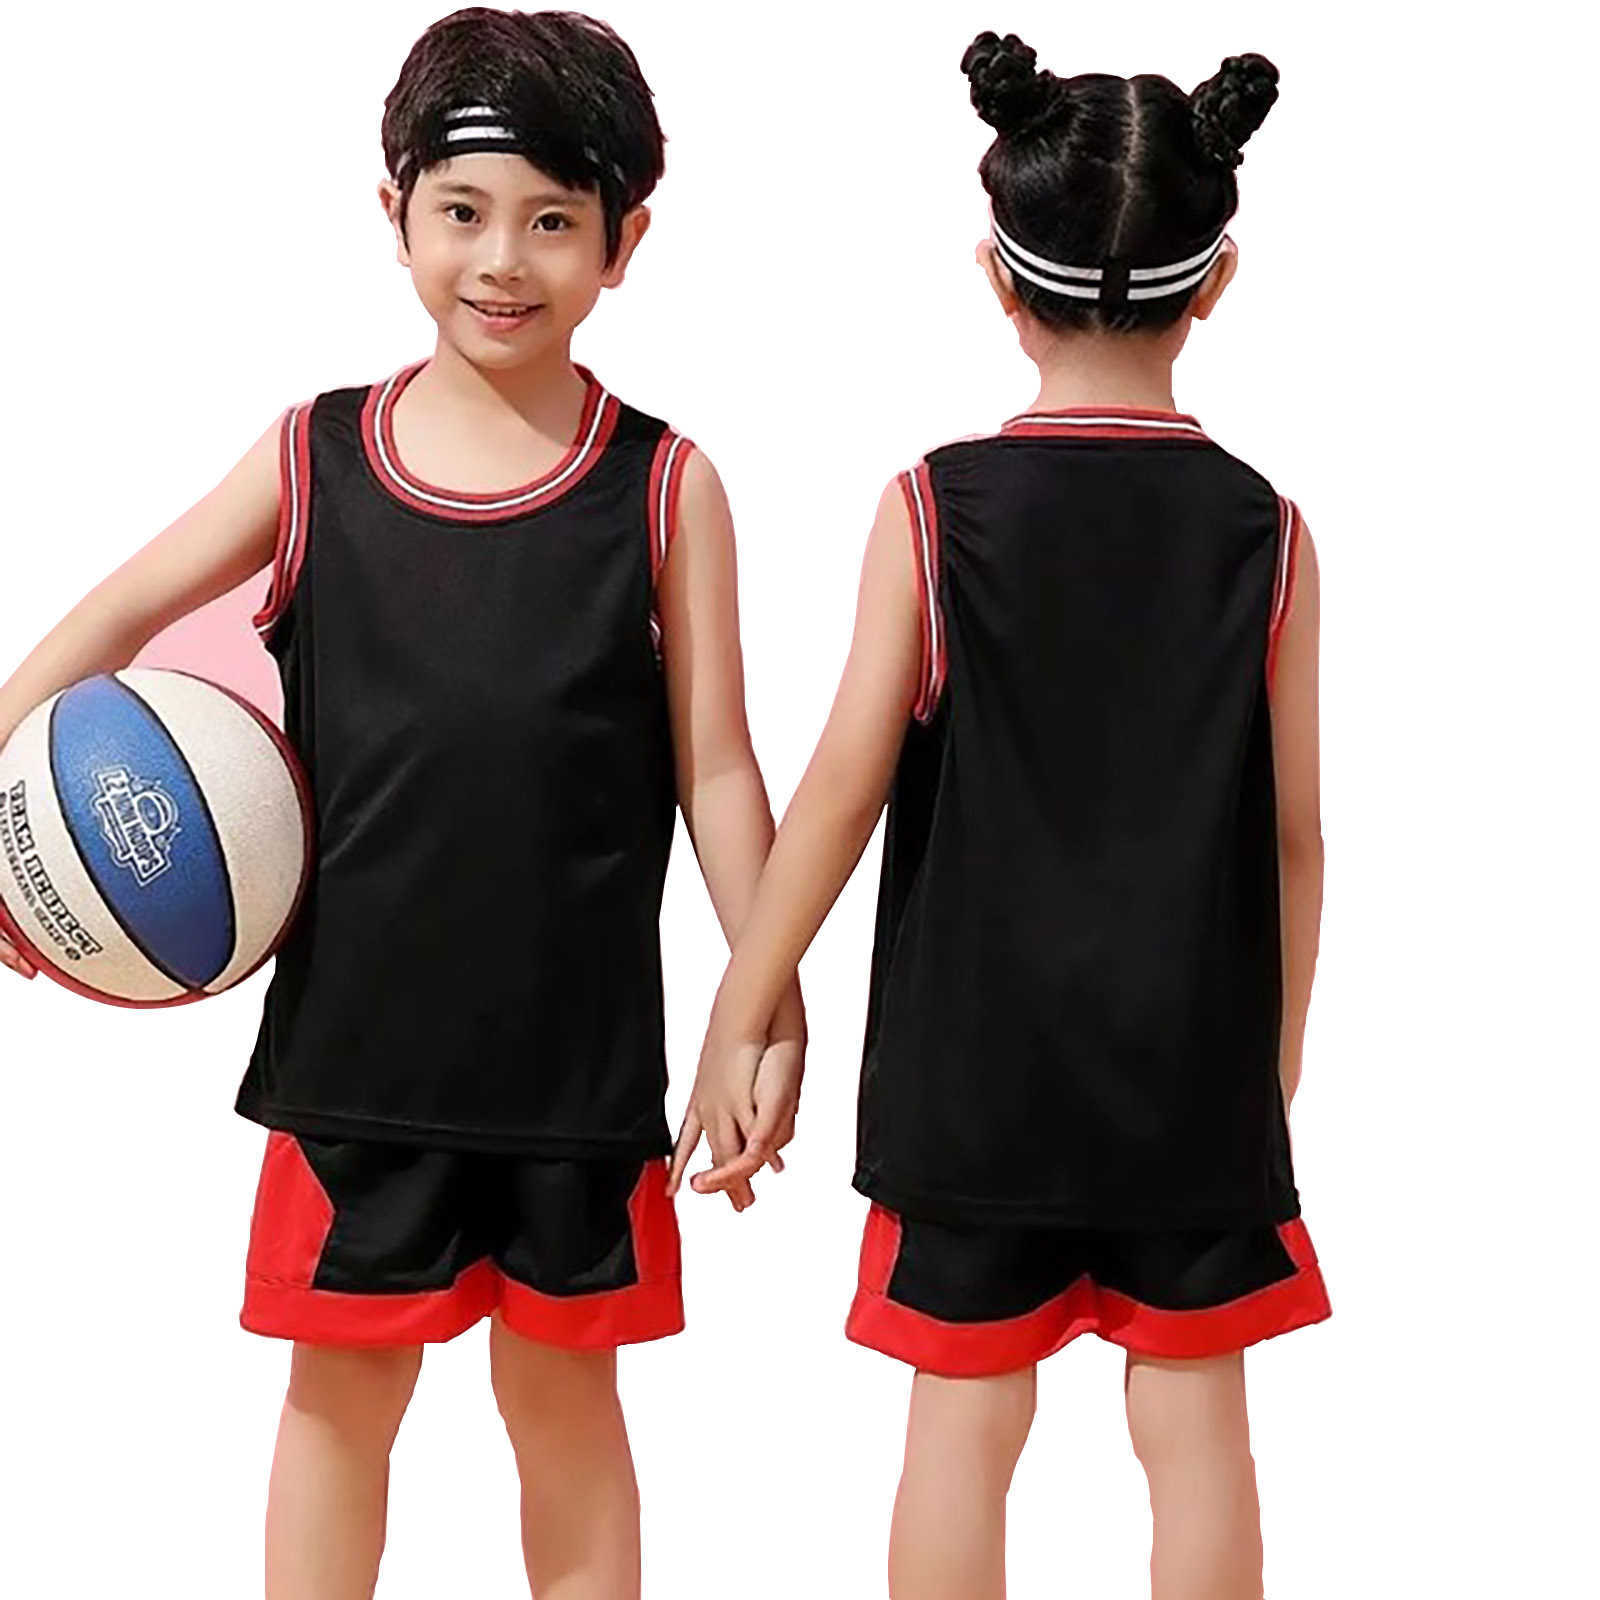 T-shirts Student Voetbal Uniform Trainingspak Kind Sport Jerseys Kids Jongens Meisje Team Basketbal Jersey Pak Voetbal Kleding Uniform 2 Stuks x0628